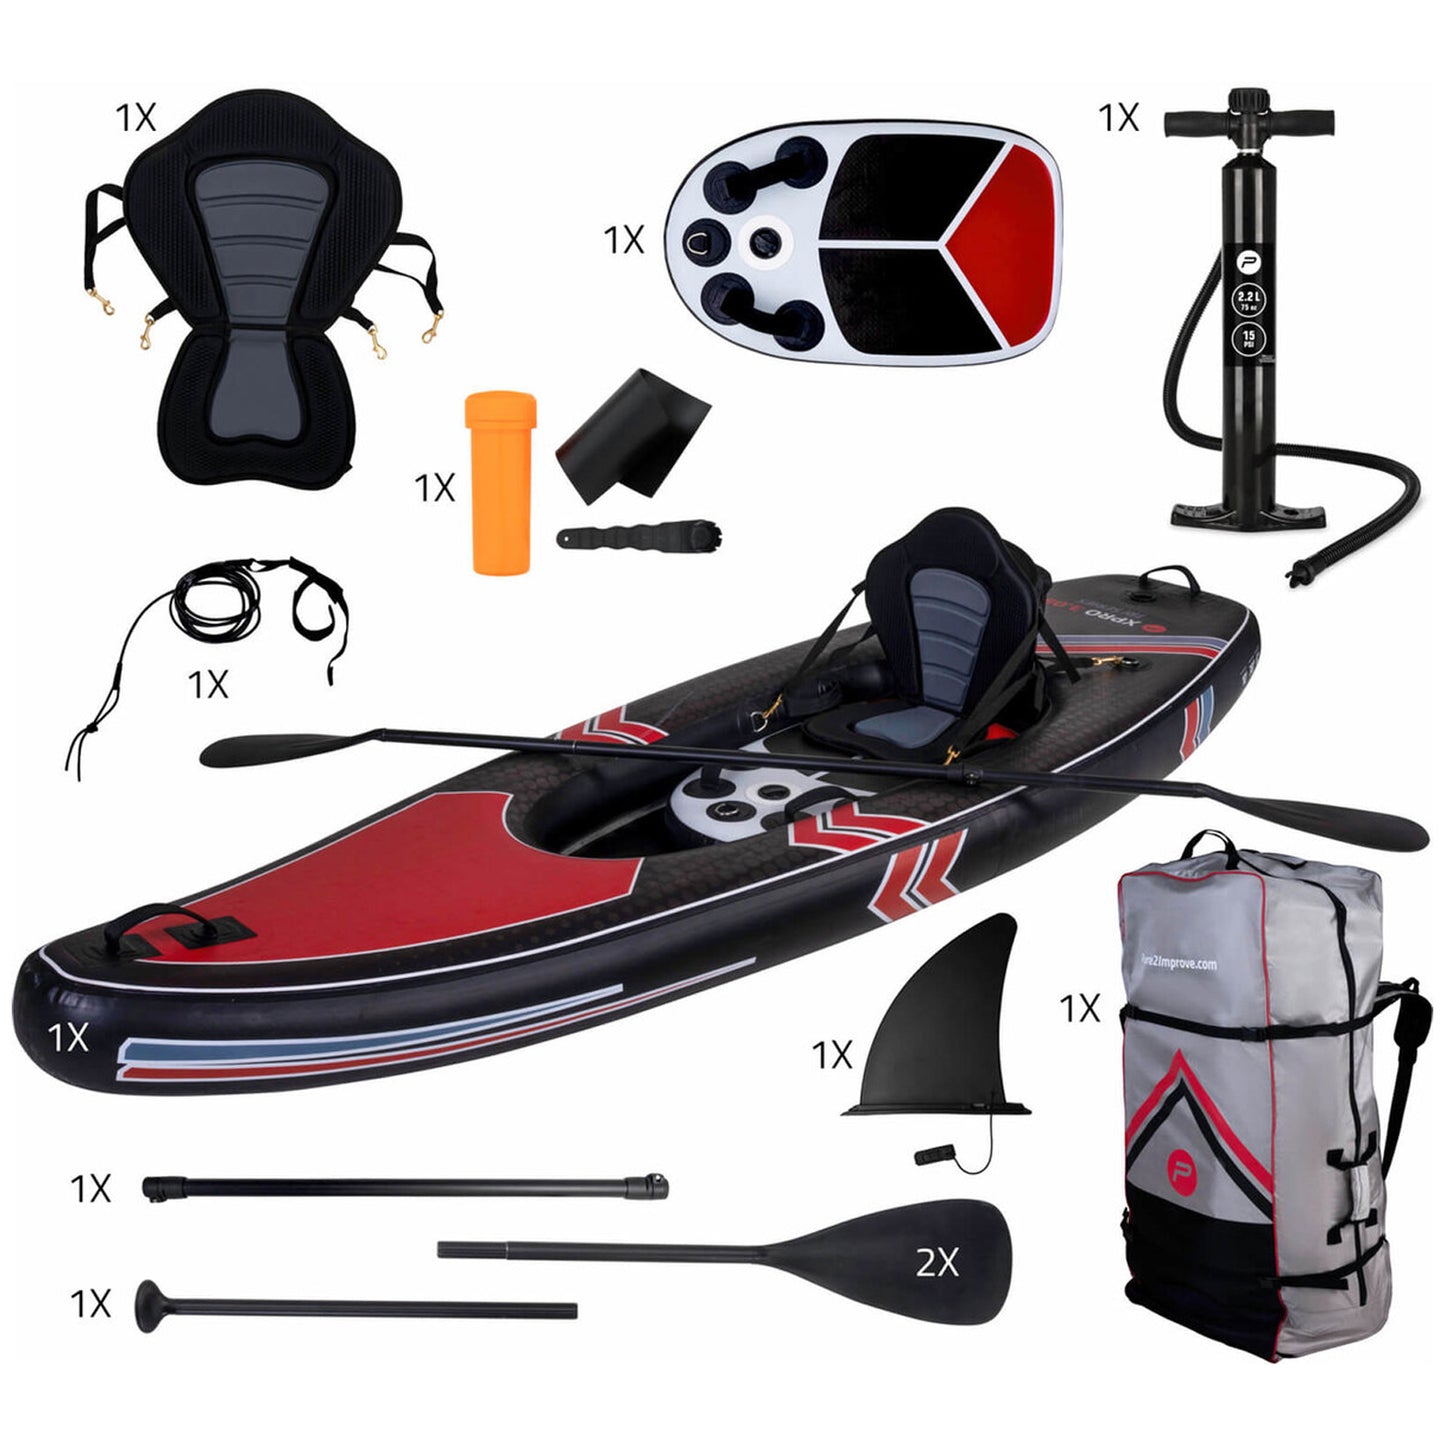 Pure4Fun Multi-Purpose Kayaks